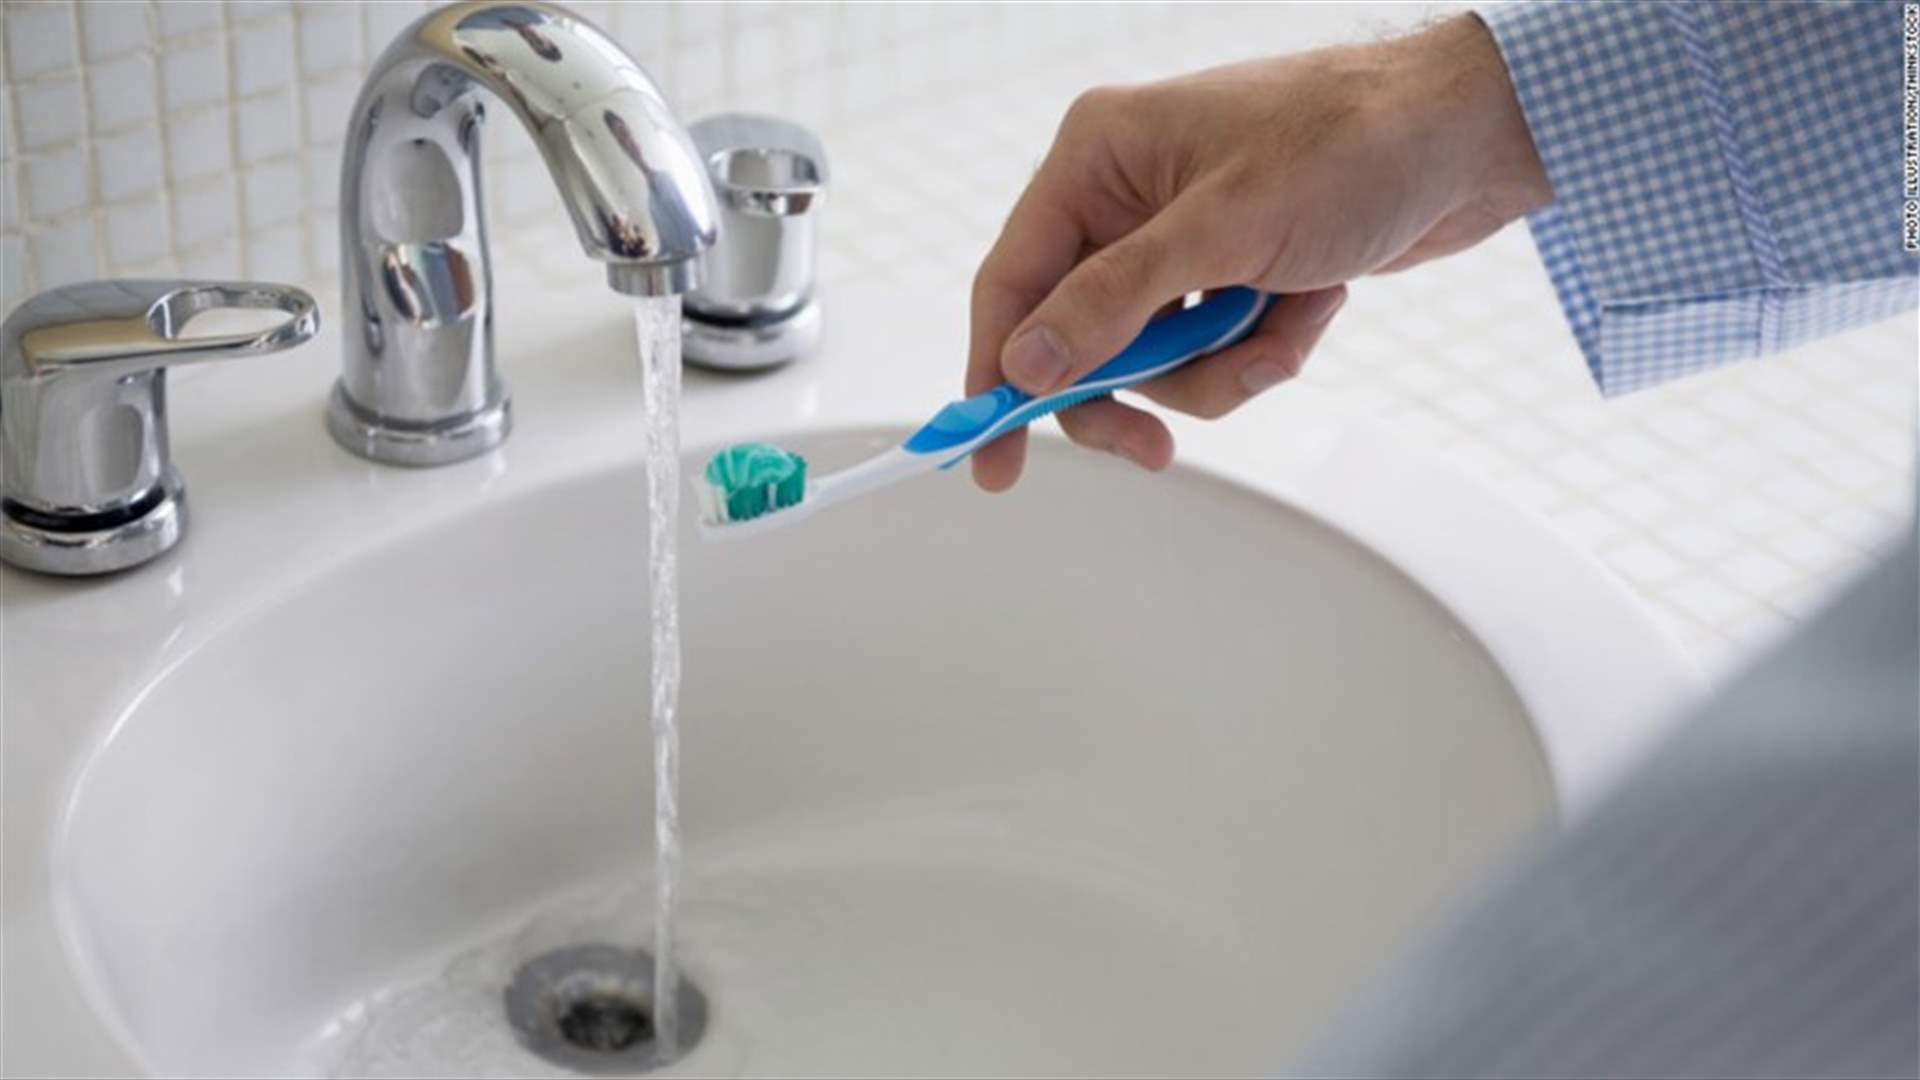 هل يجب تبليل فرشاة الأسنان قبل وضع المعجون أو بعده؟